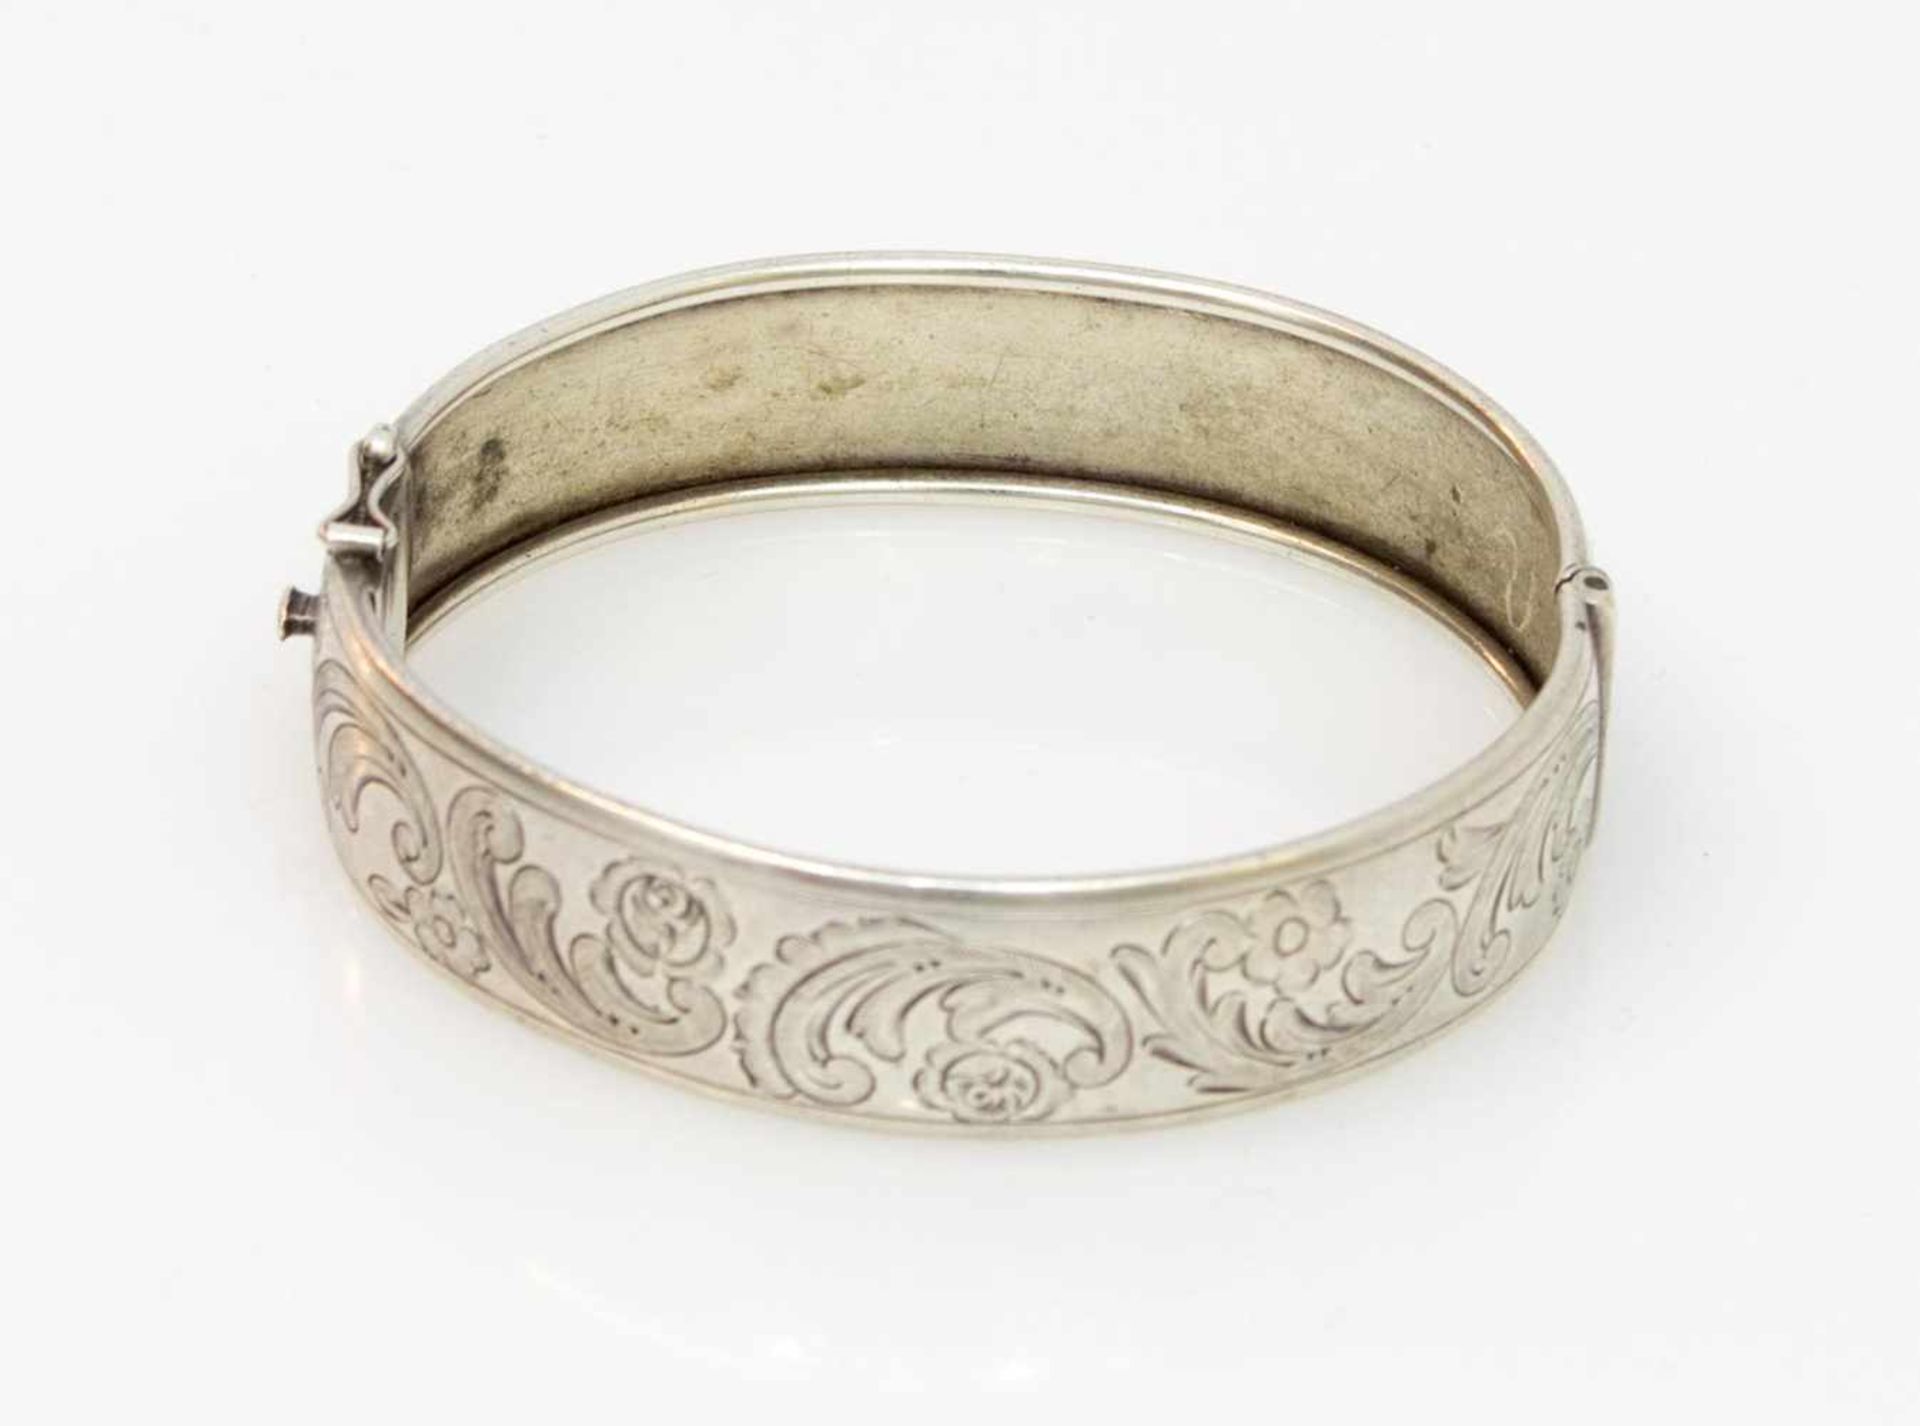 Armreif 835er Silber, 20,6 g, ovale Form mit feinem floralen Dekor, Steckverschluß mit